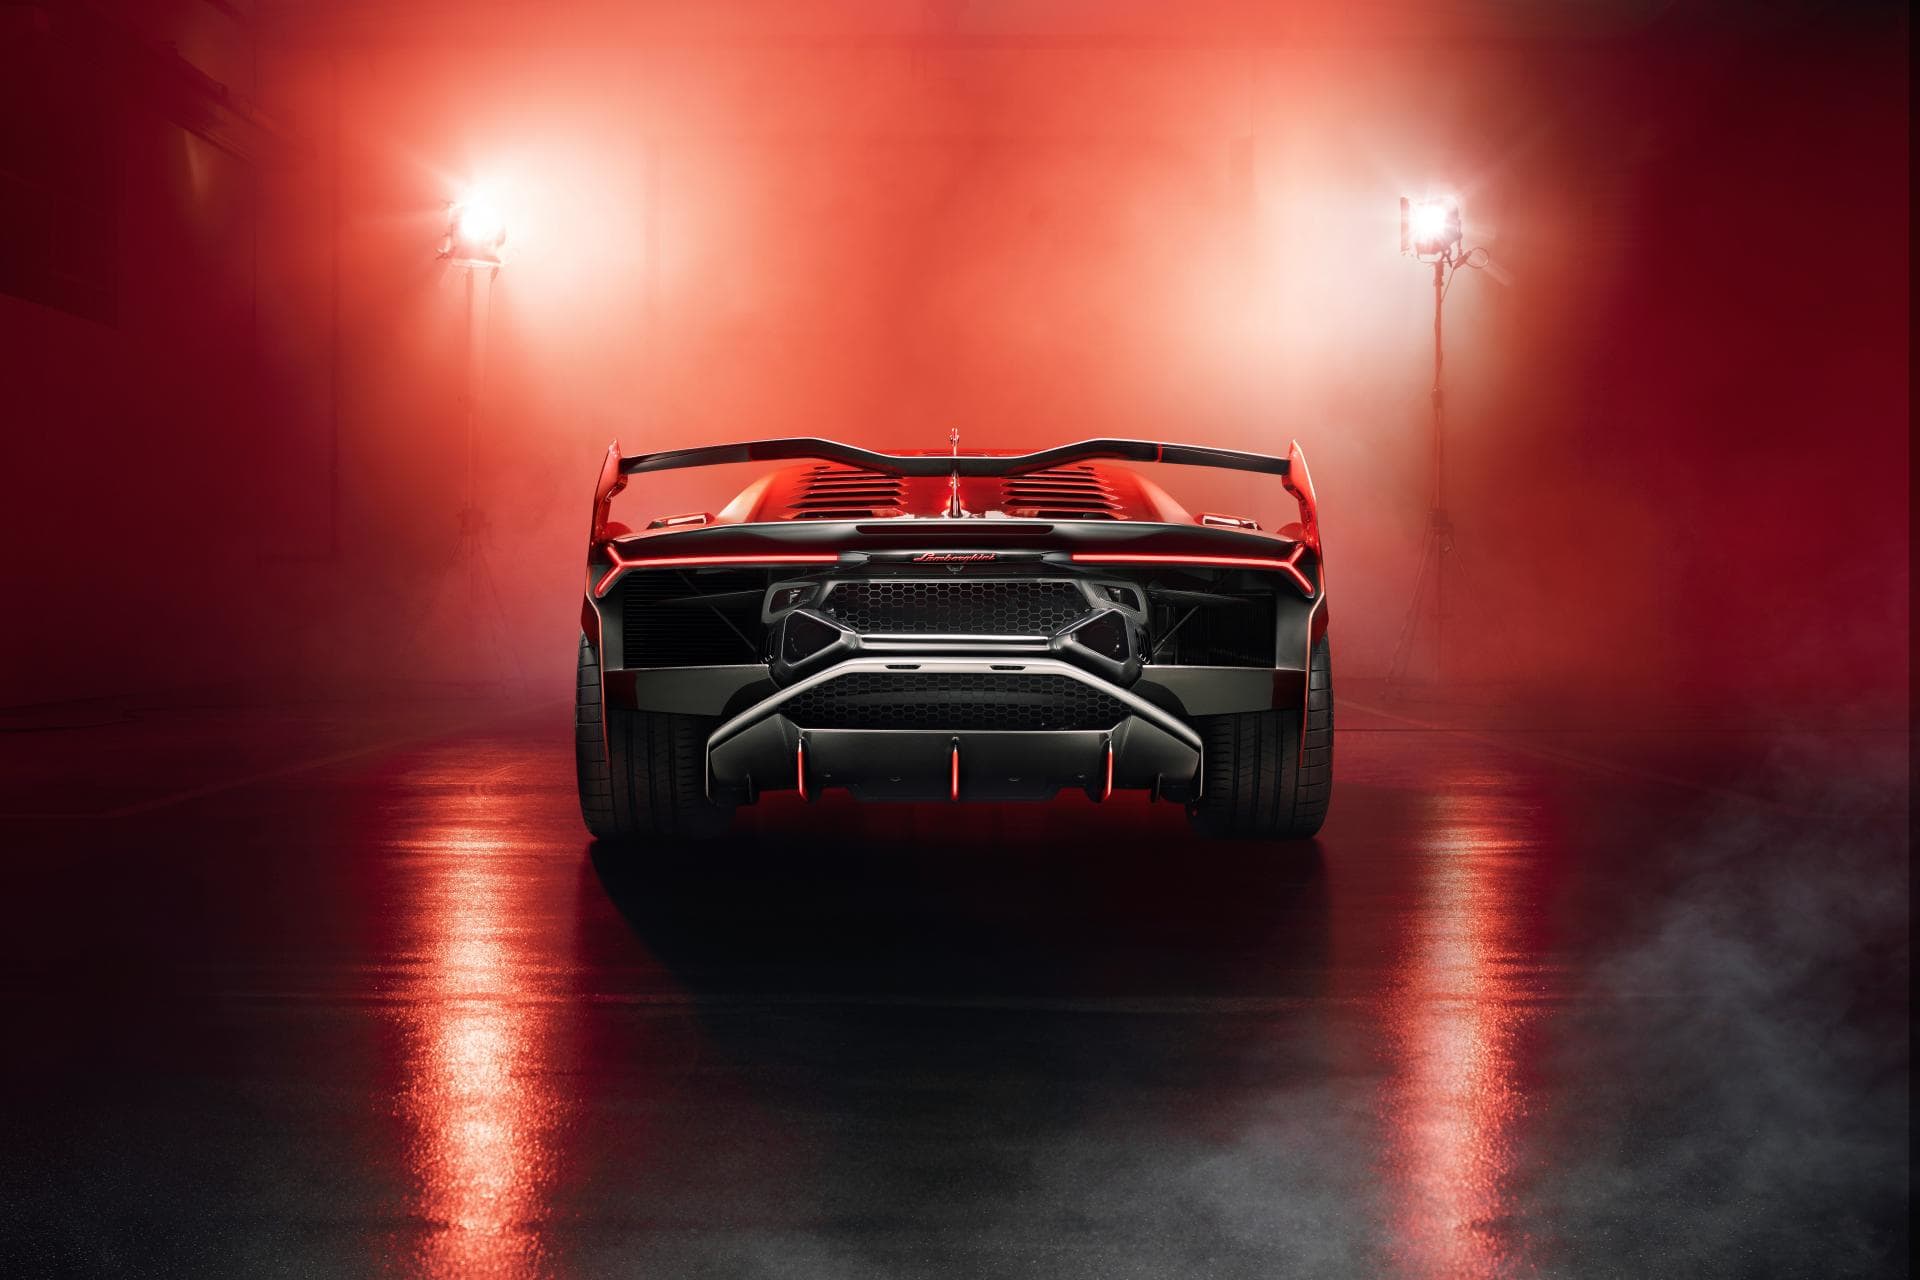 Lamborghini Squadra Corse SC18 Alston Road-legal Racecar 6SpeedOnline.com